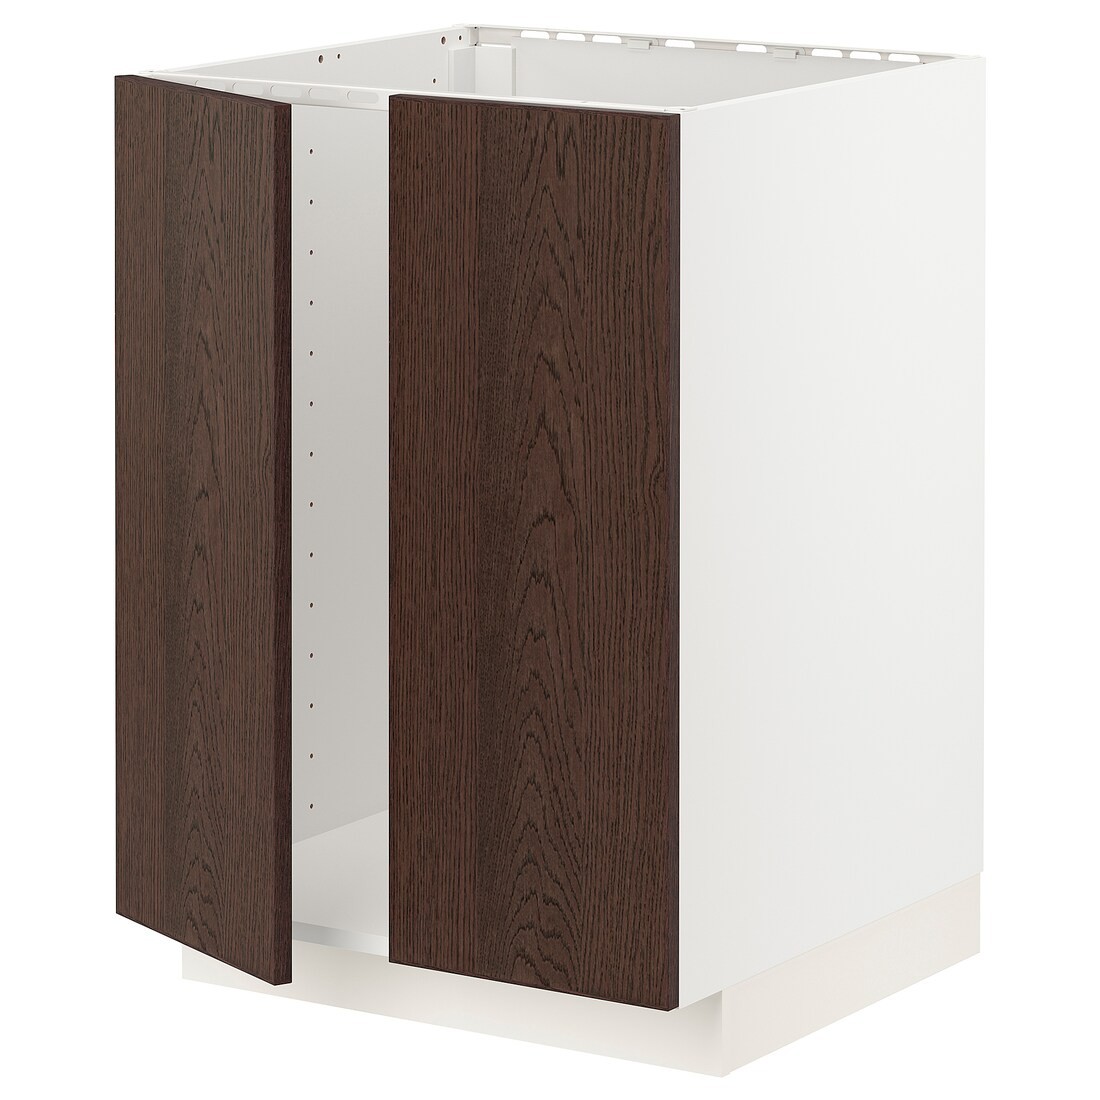 METOD МЕТОД Напольный шкаф для мойки, белый / Sinarp коричневый, 60x60 см